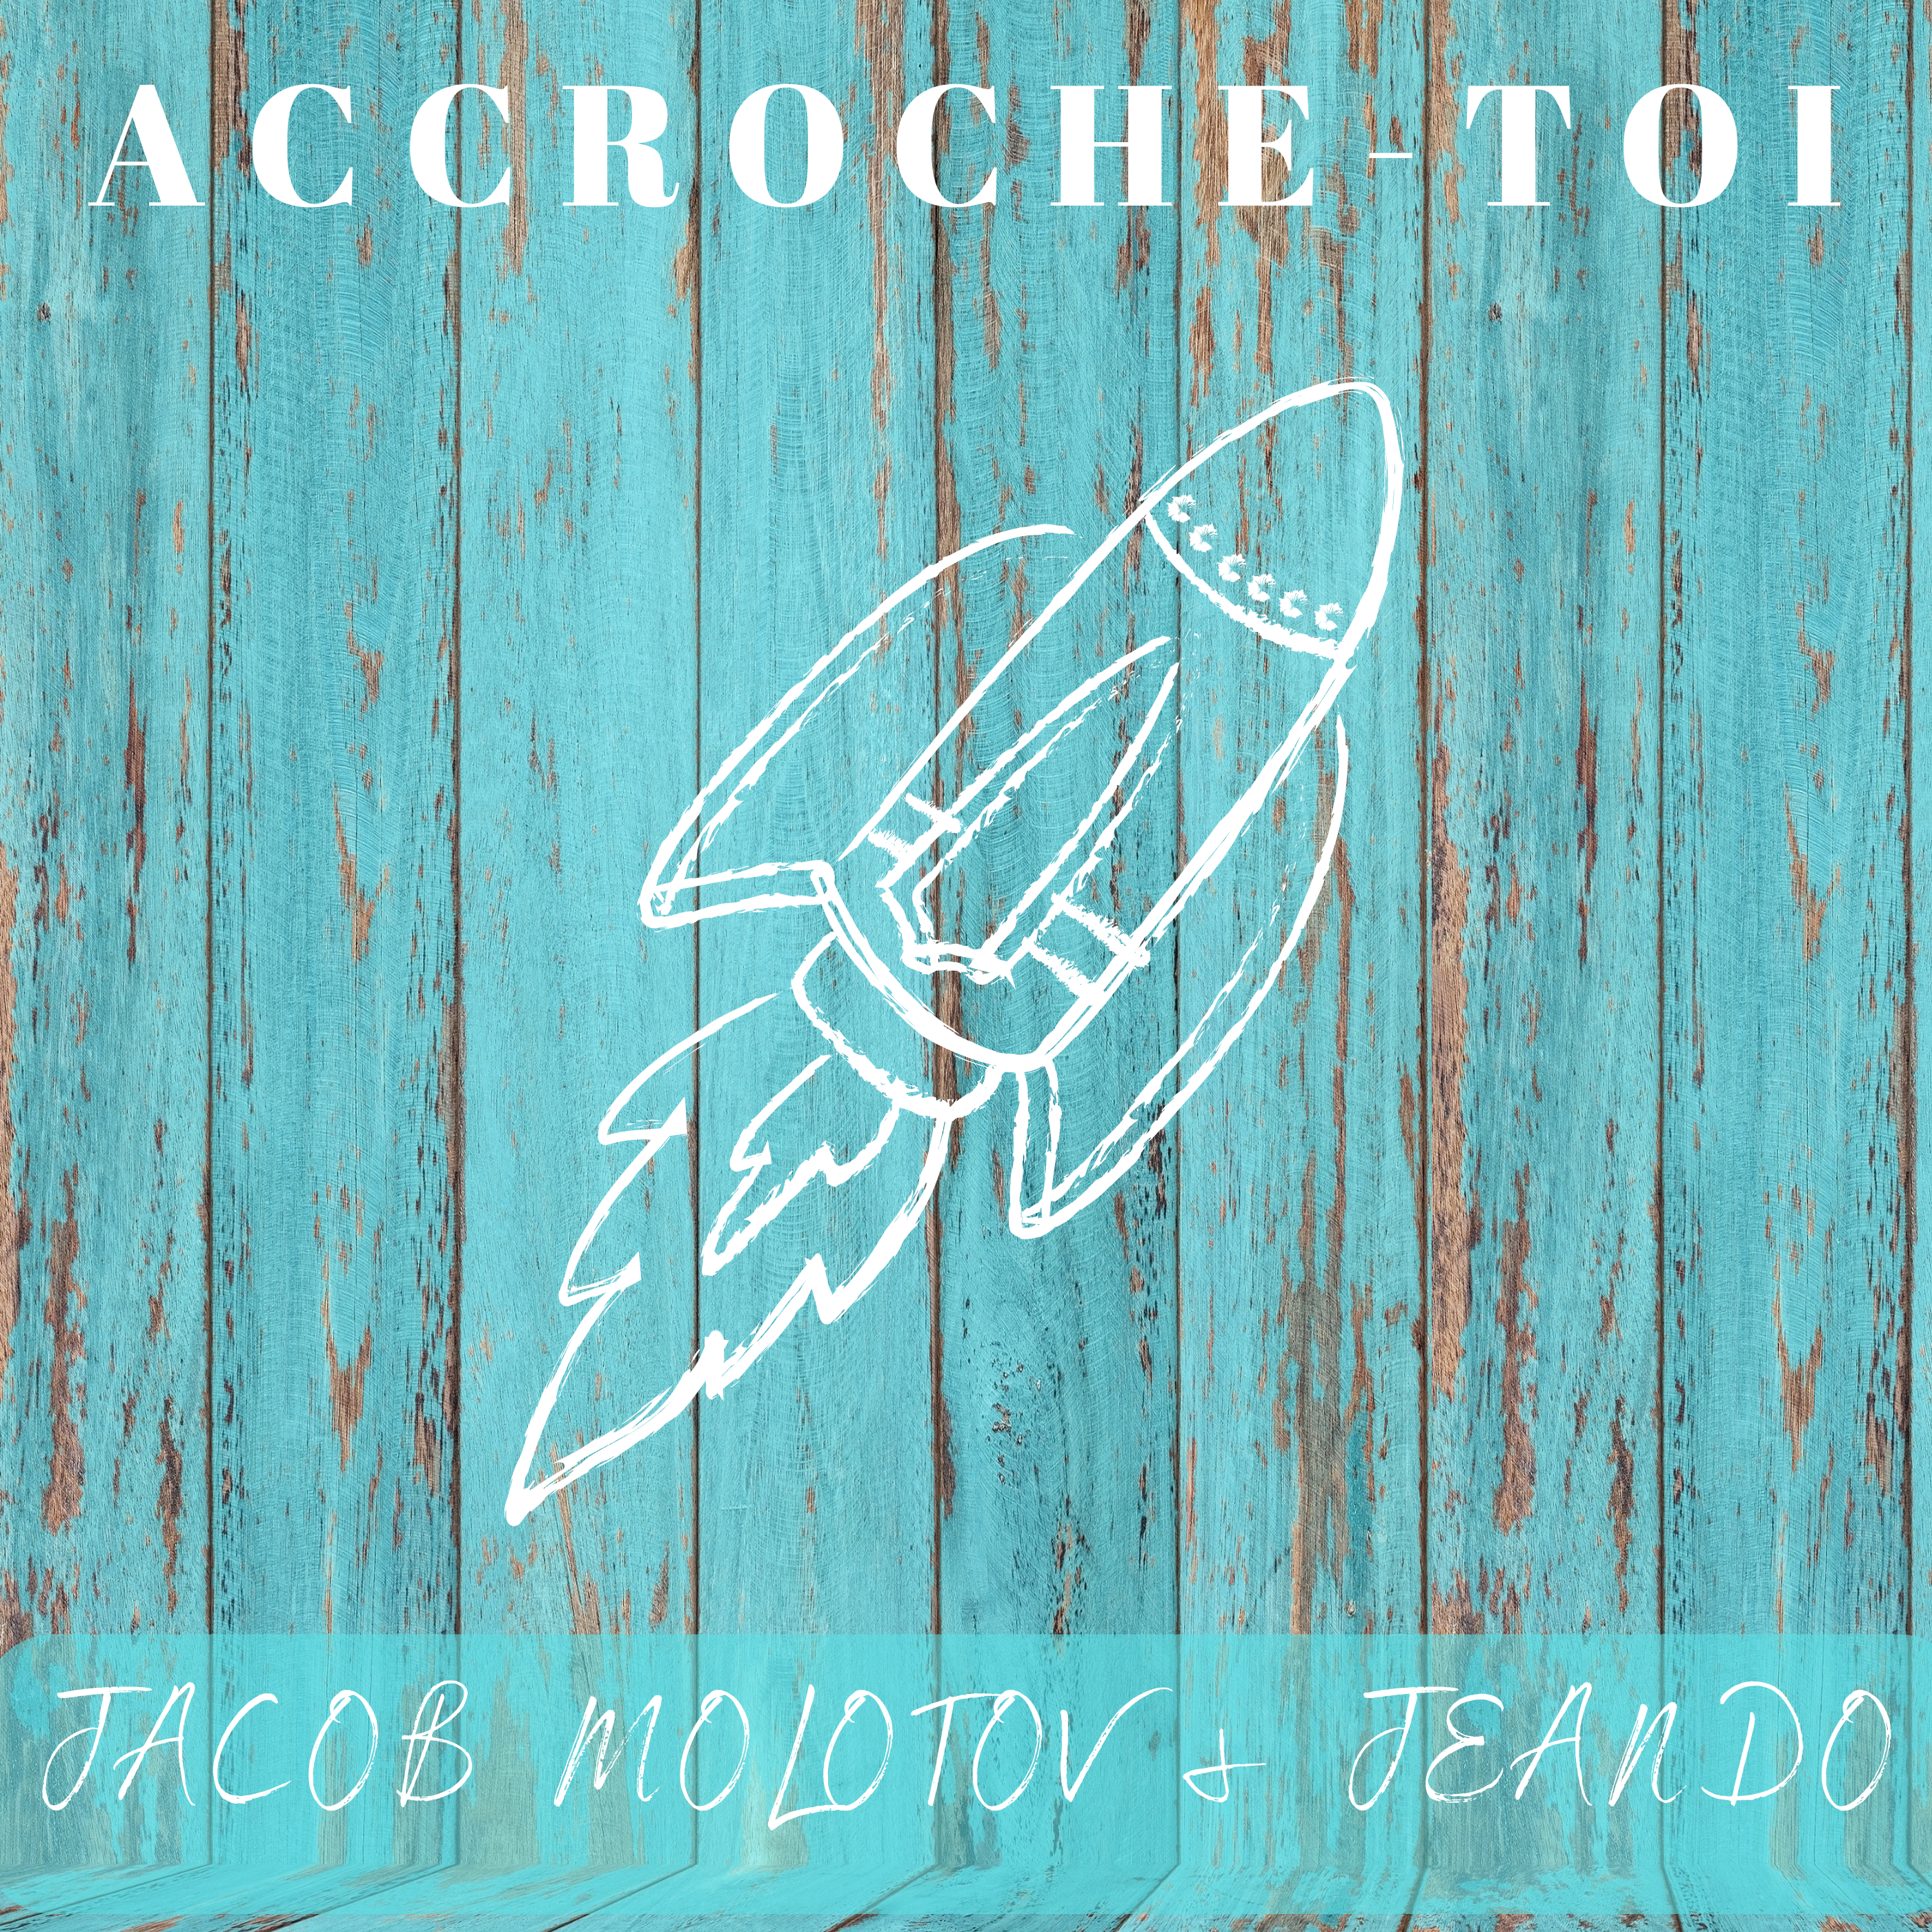 Accroche-toi single cover - Jean-Dominique Hamel-Ratté